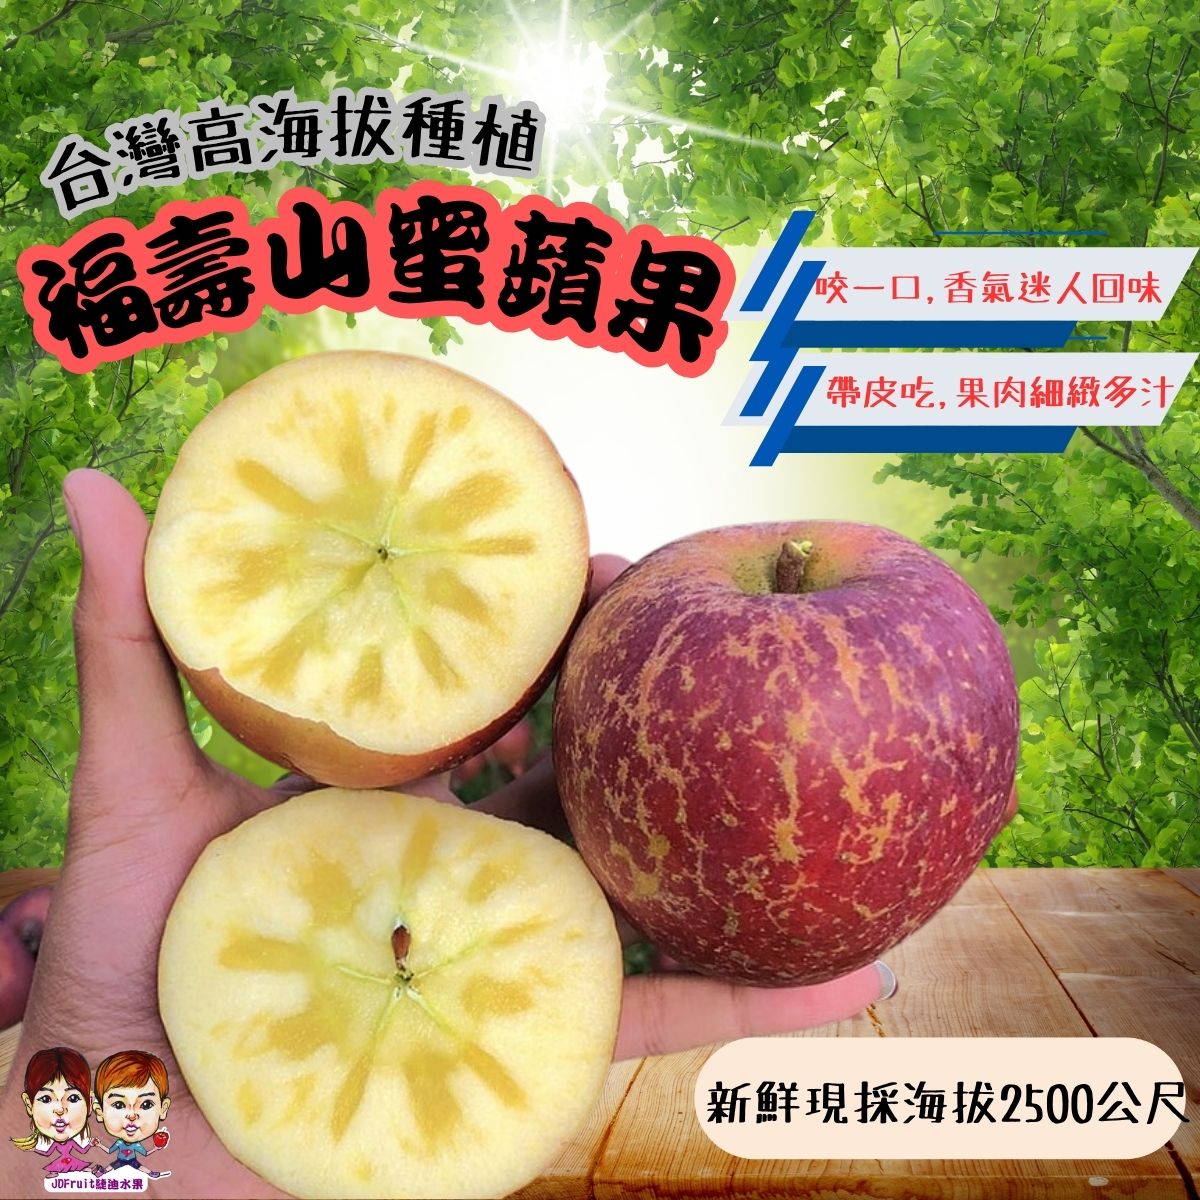 【緁迪水果JDFruit】台灣福壽山蜜蘋果(大果)4斤裝 不必山上 幫您直接採收下山 享受台灣蜜蘋果的好滋味